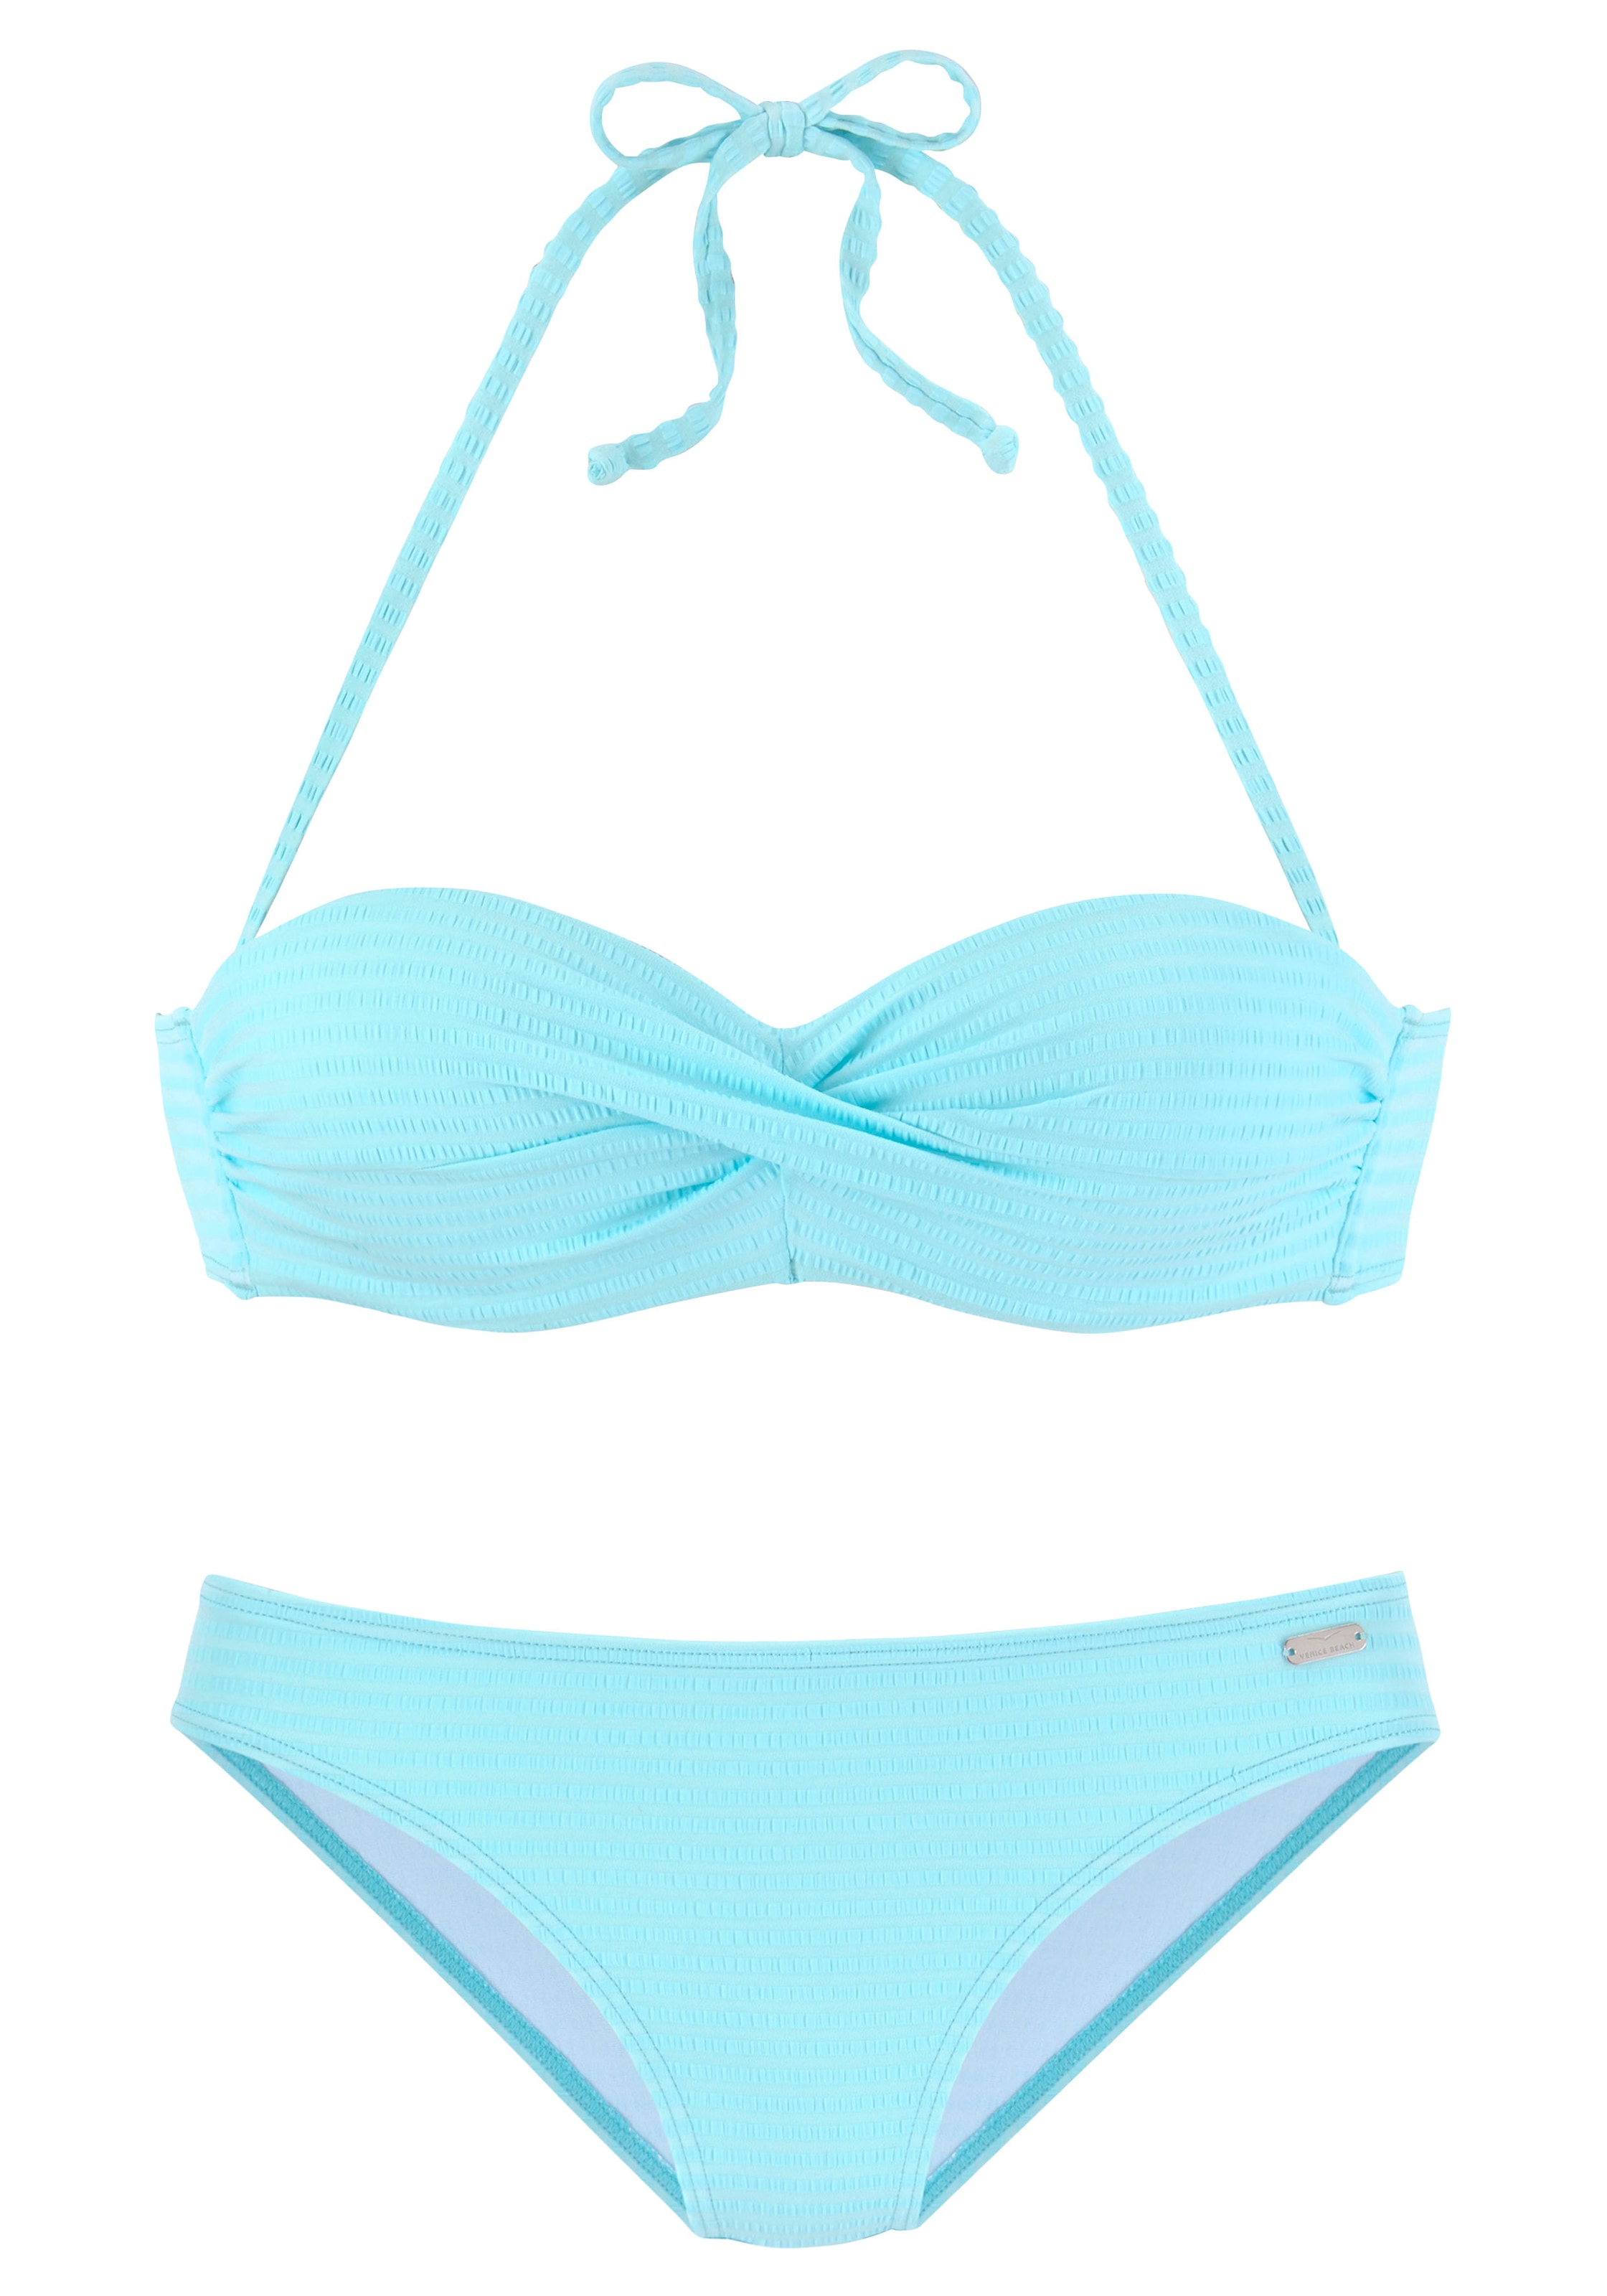 Venice Beach Bügel-Bandeau-Bikini, aus edler Strukturware